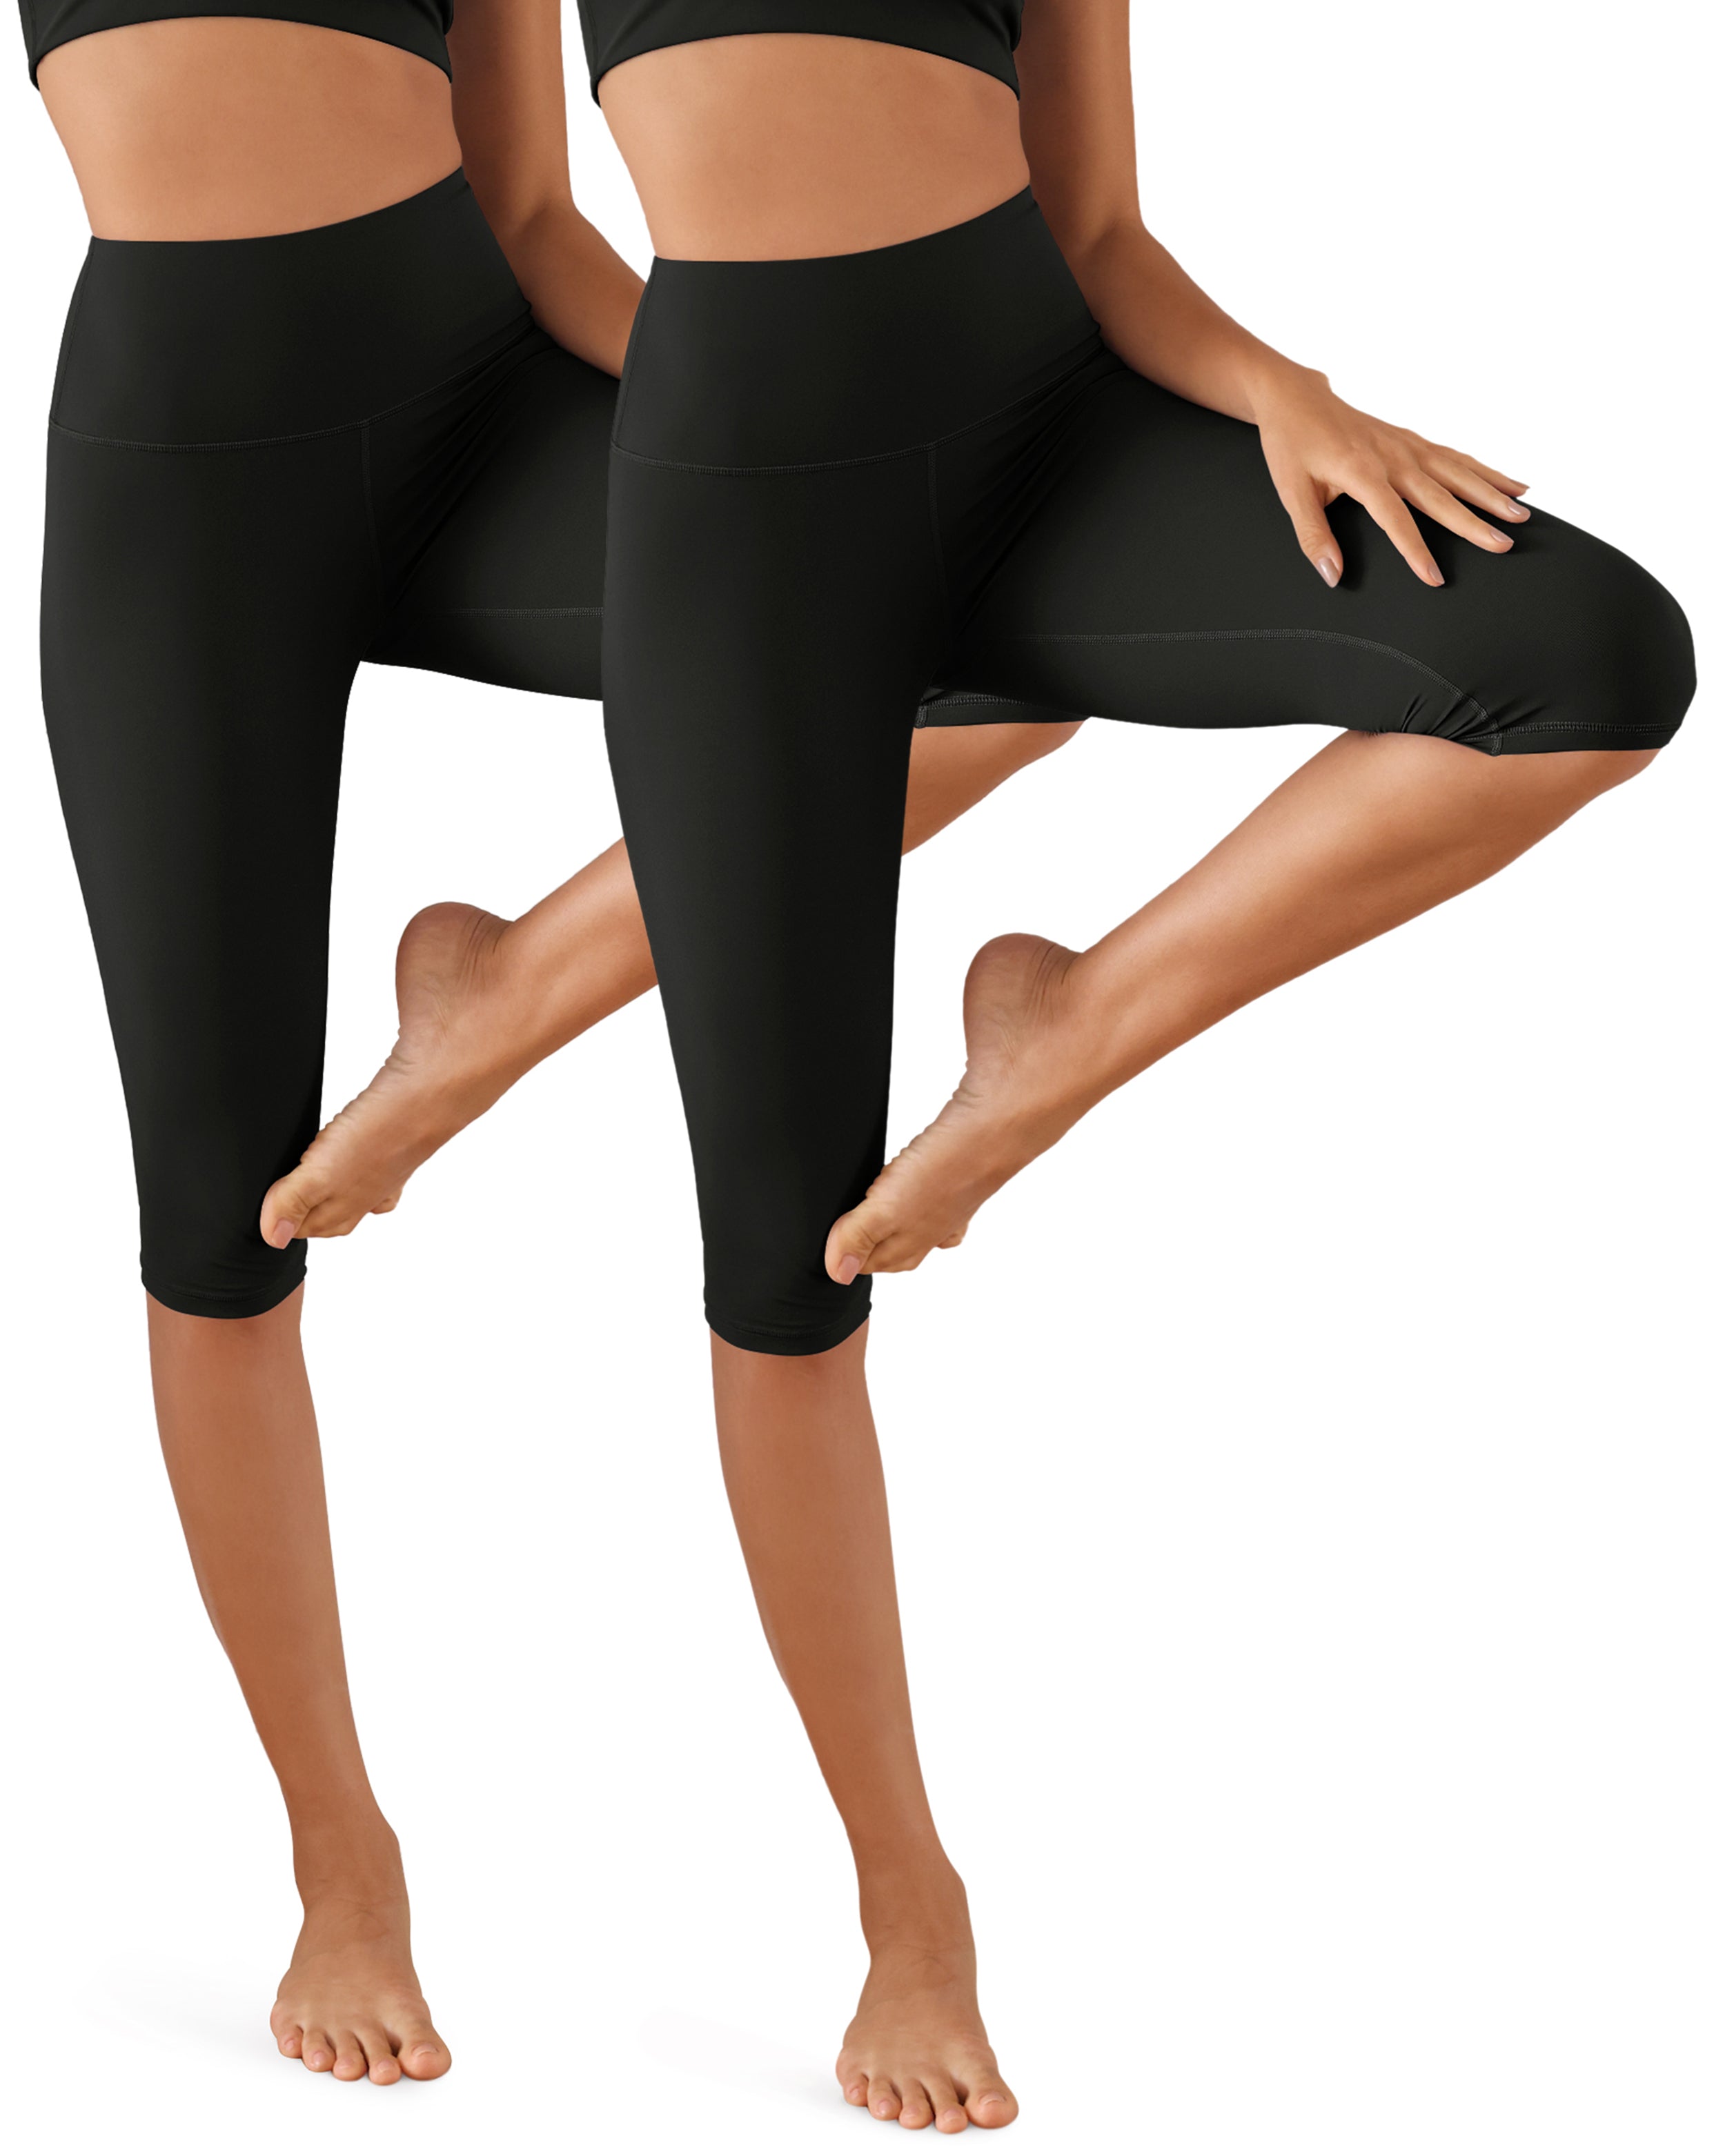 ODCLOUD 2-Pack High Waist Yoga Capris - Knee Length Black+Black - ododos